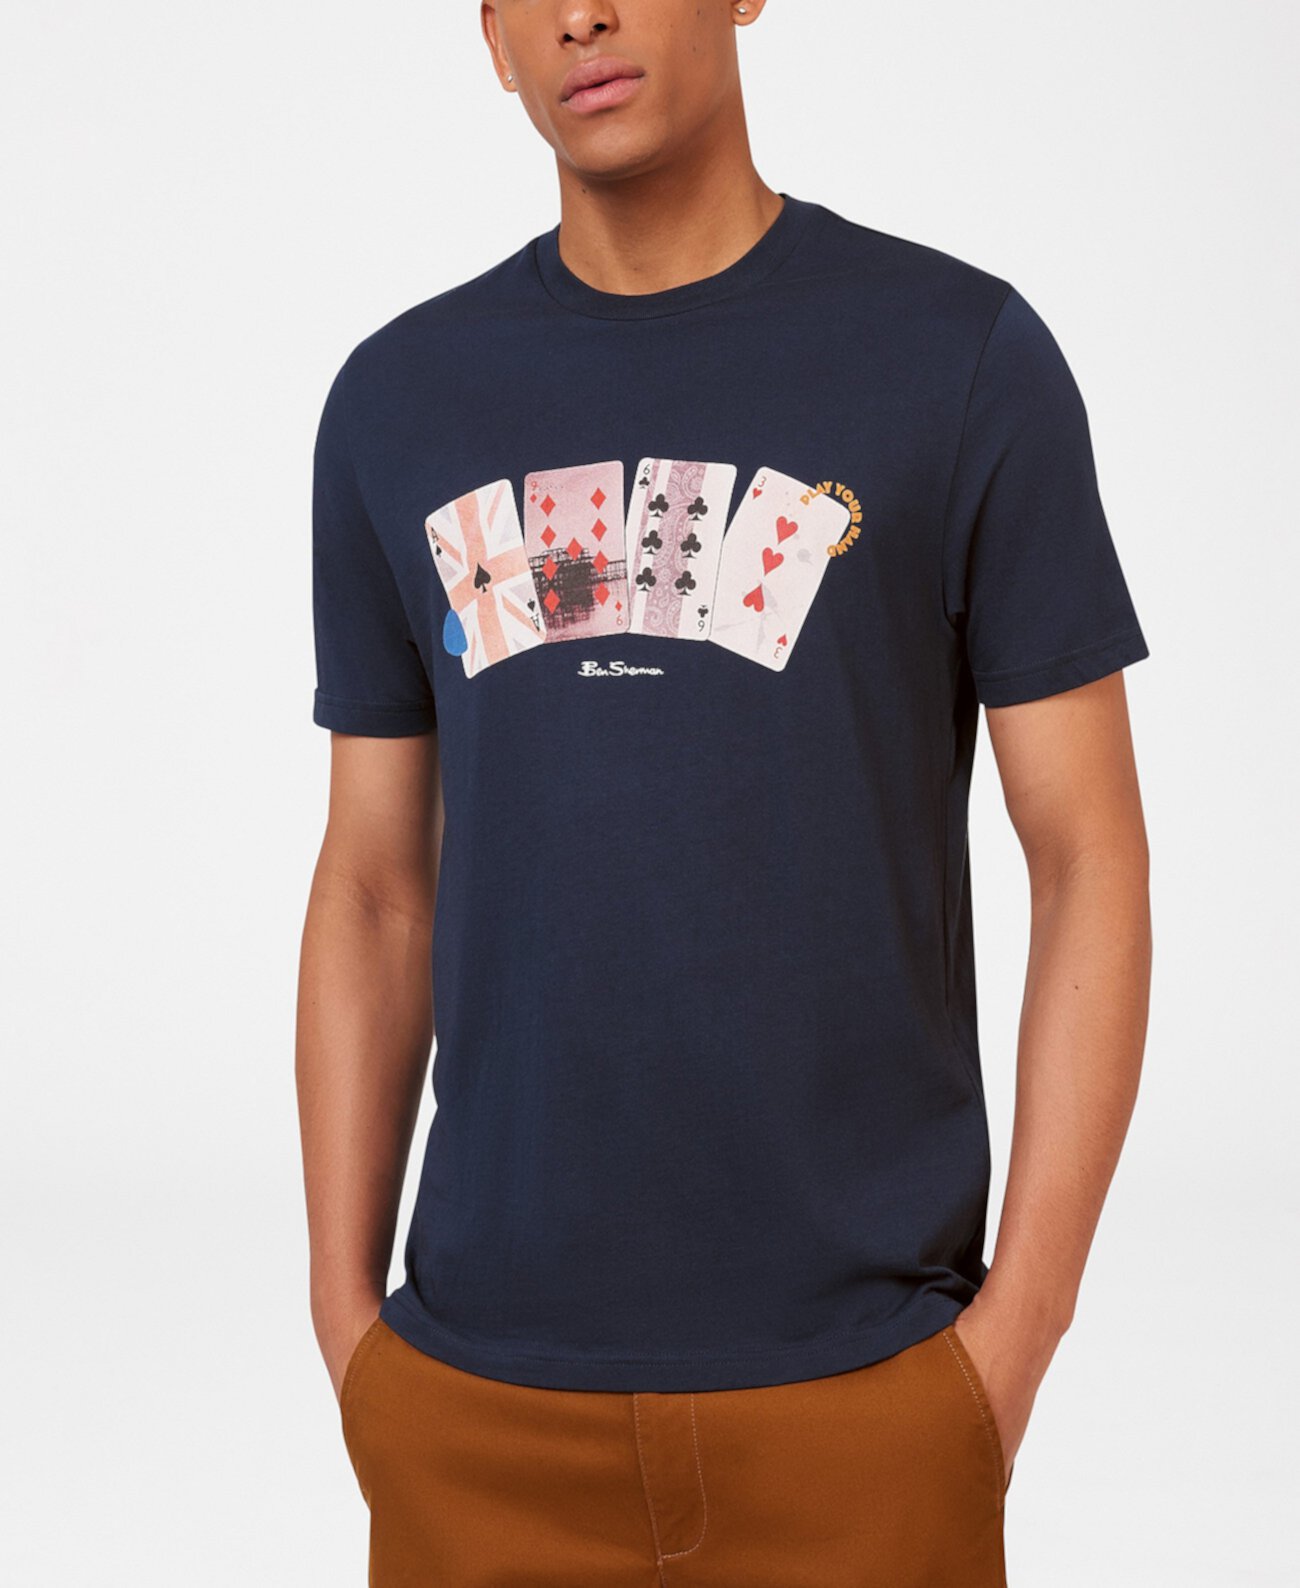 Мужская футболка стандартного кроя с игральными картами Ben Sherman